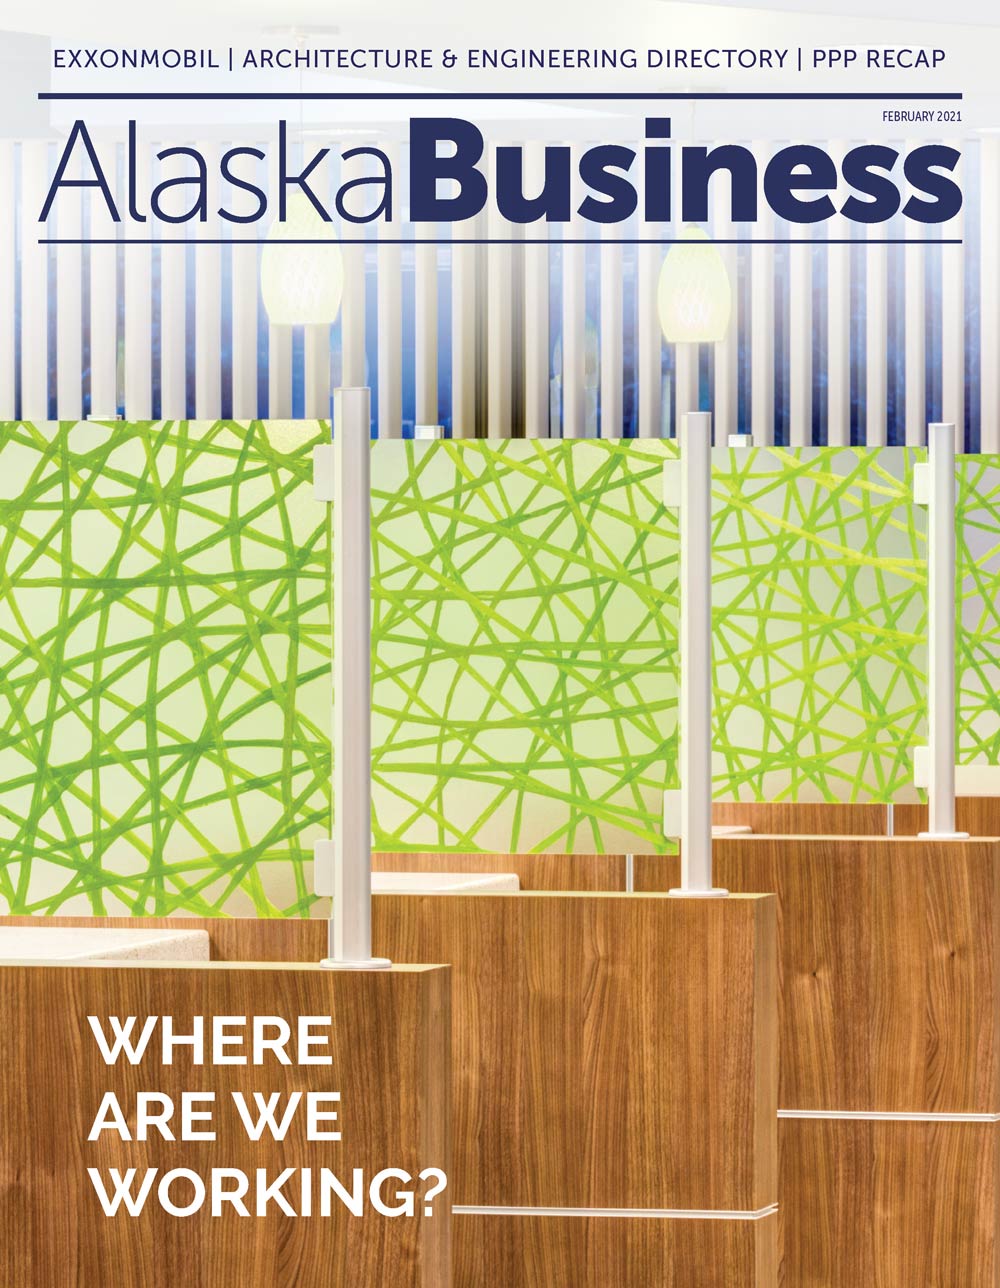 Alaska Business Magazine February 2021 cover